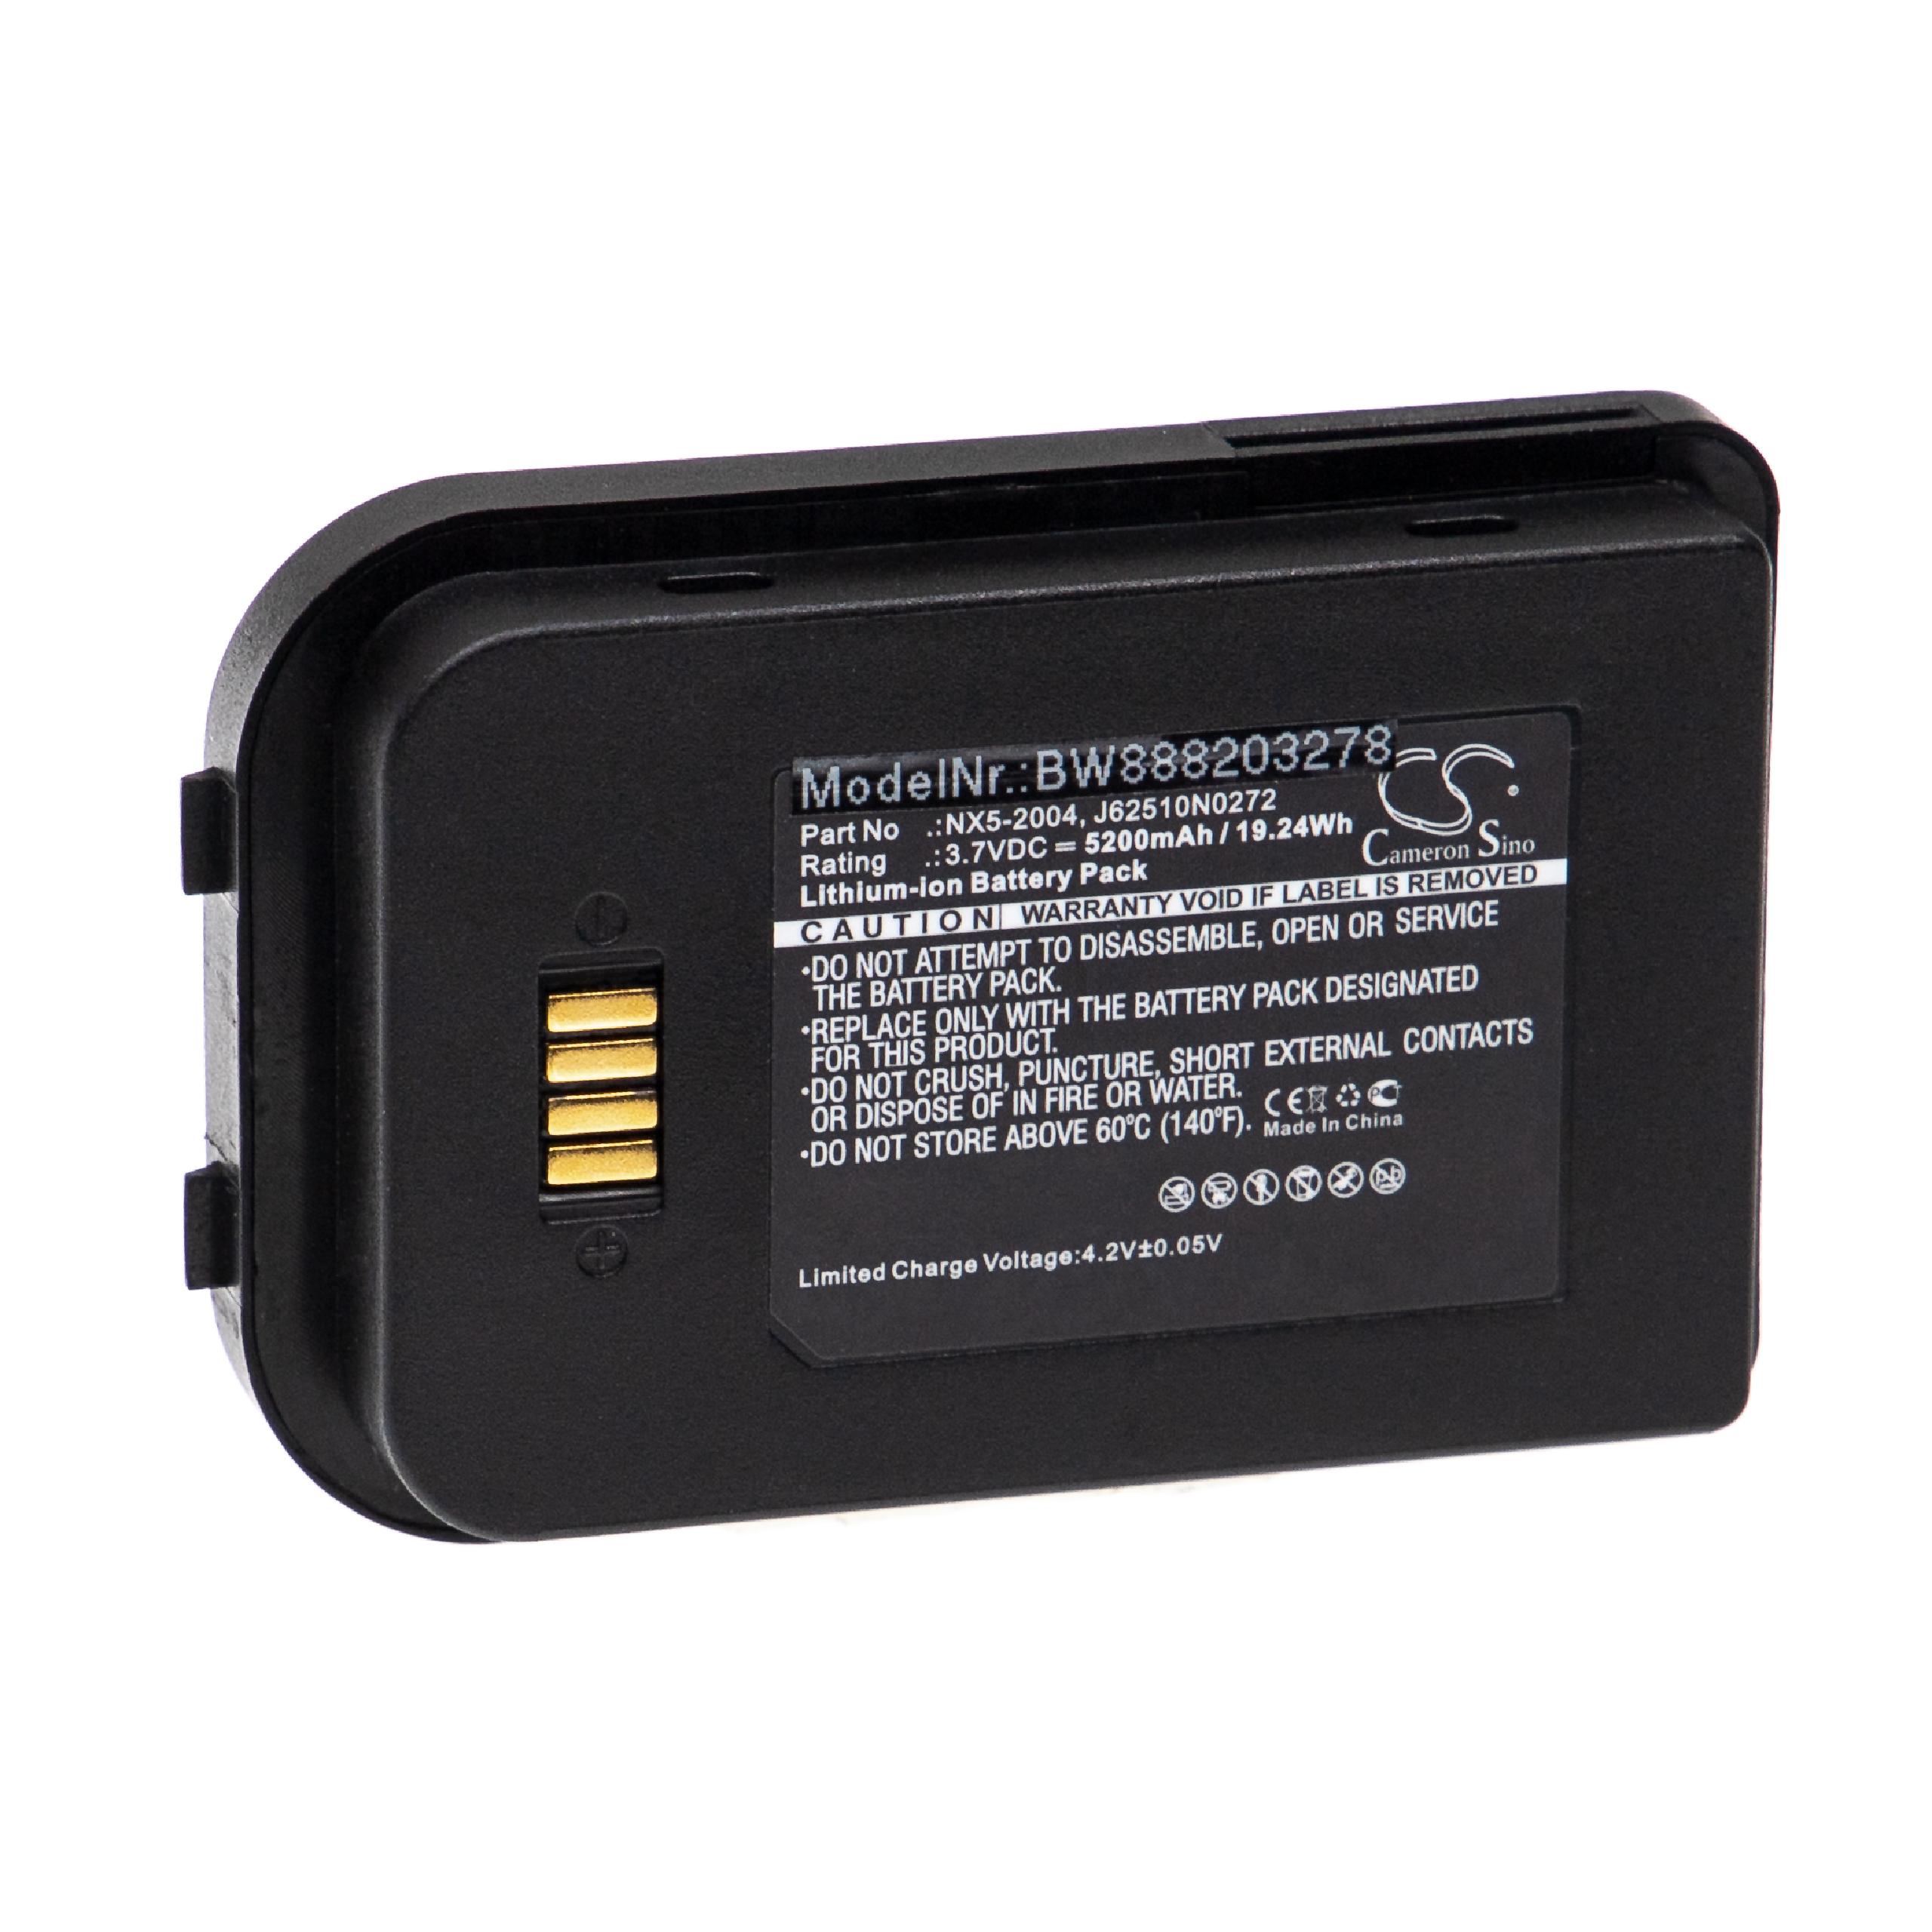 Batterie remplace Bluebird Handheld Nautiz 6251-0A pour scanner de code-barre - 5200mAh 3,7V Li-ion